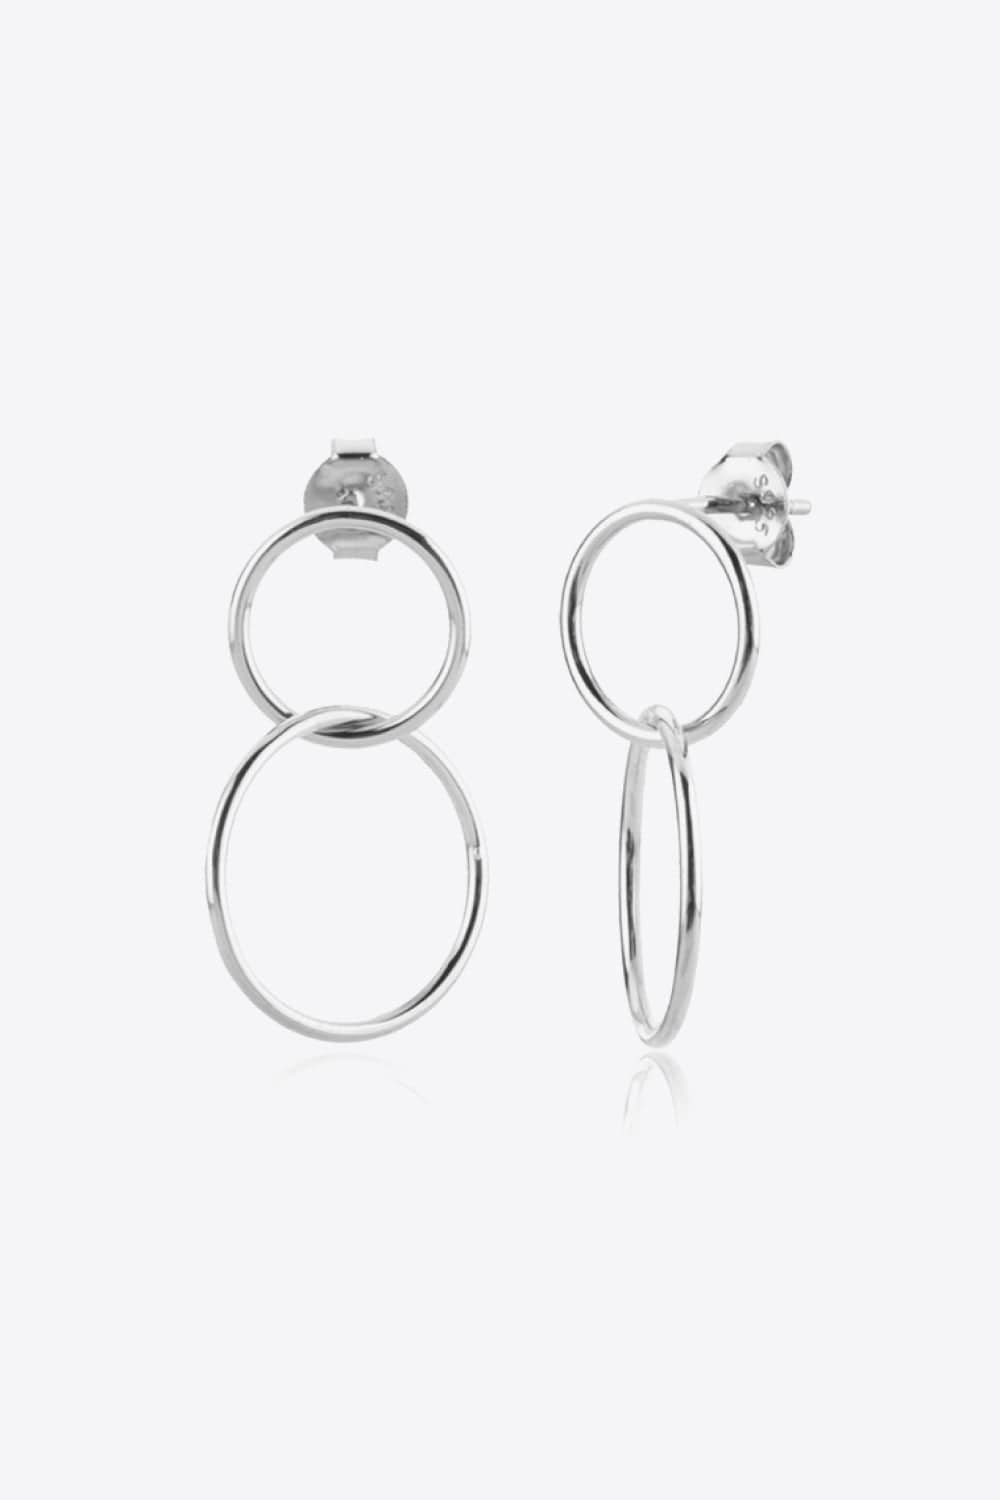 925 Sterling Silver Double Hoop Drop Earrings - Body By J'ne